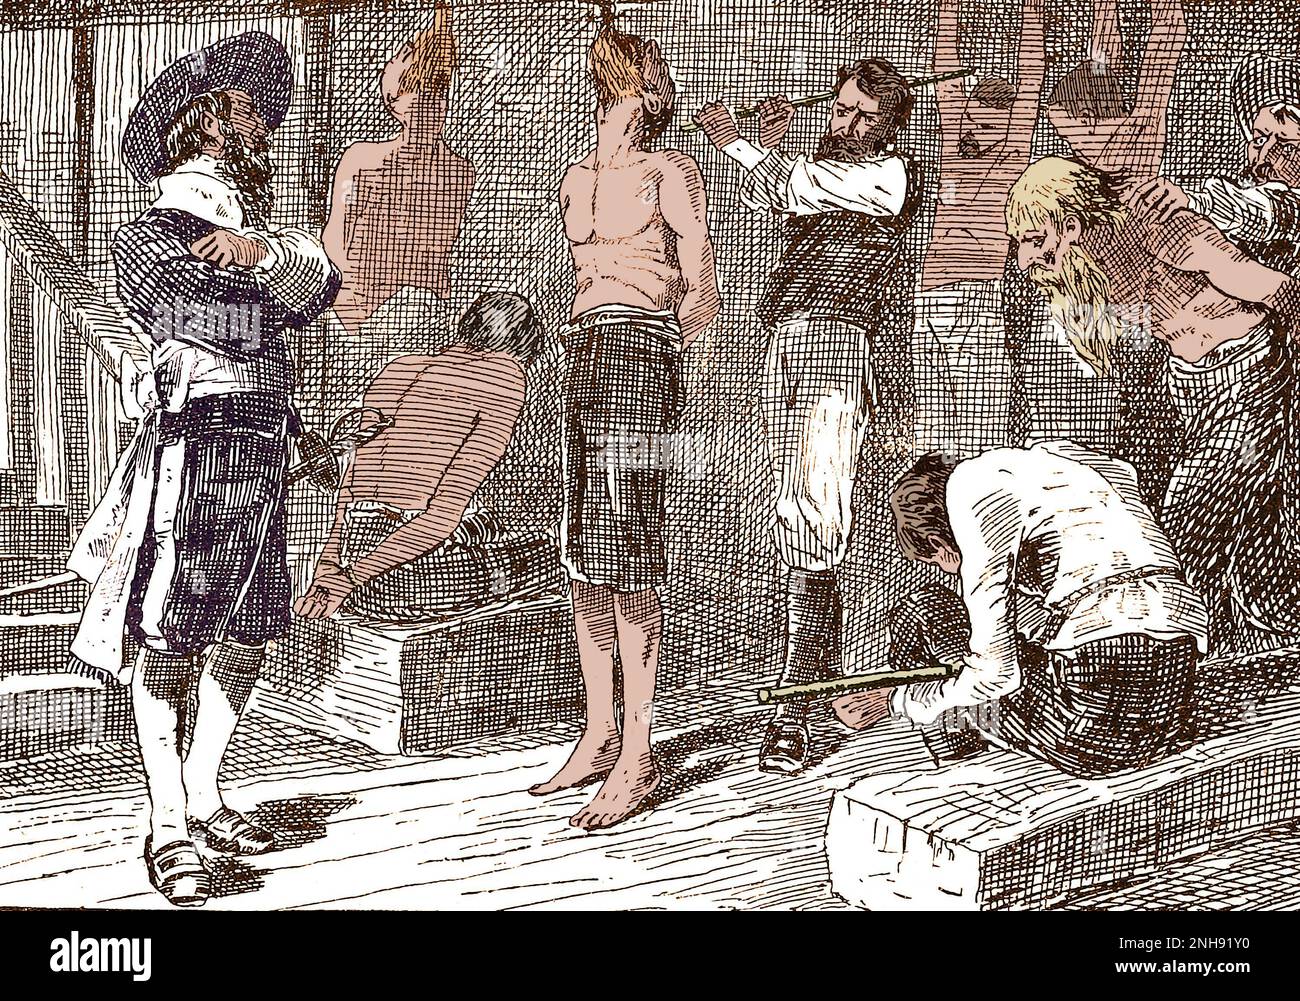 Le pirate Henry Morgan torture des prisonniers. Sir Henry Morgan (1635-1688) était un corsaire gallois, propriétaire de plantation, et plus tard, lieutenant-gouverneur de la Jamaïque. Illustration de John Abbott, 1874. Colorisé. Banque D'Images